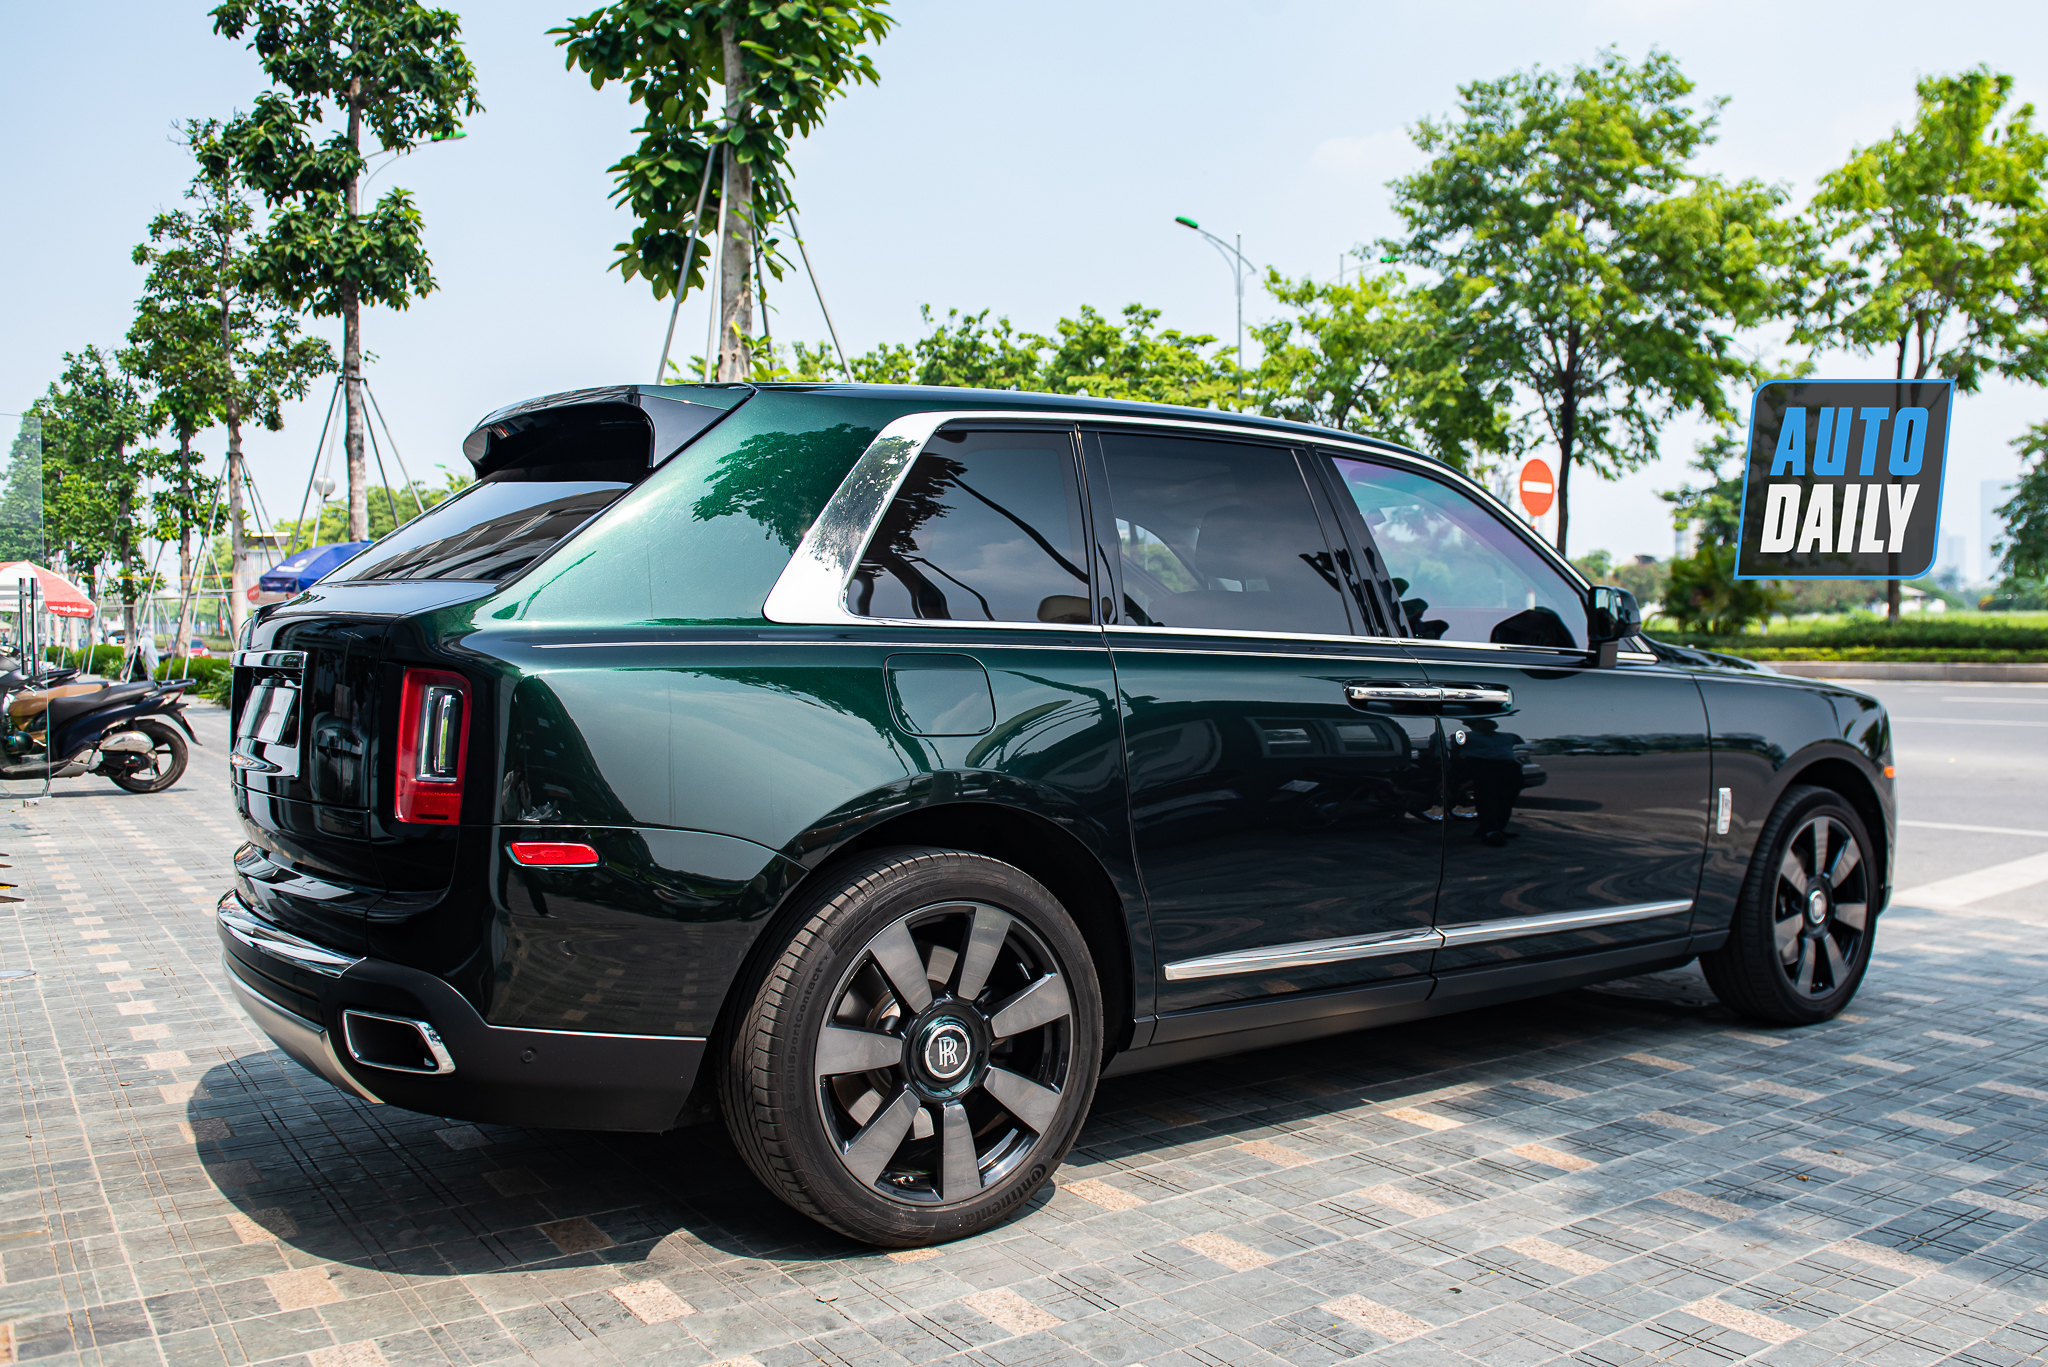 Cận cảnh Rolls-Royce Cullinan màu xanh lá của đại gia Hà Nội có logo phát sáng rollsroyce-cullinan-autodaily-6.JPG